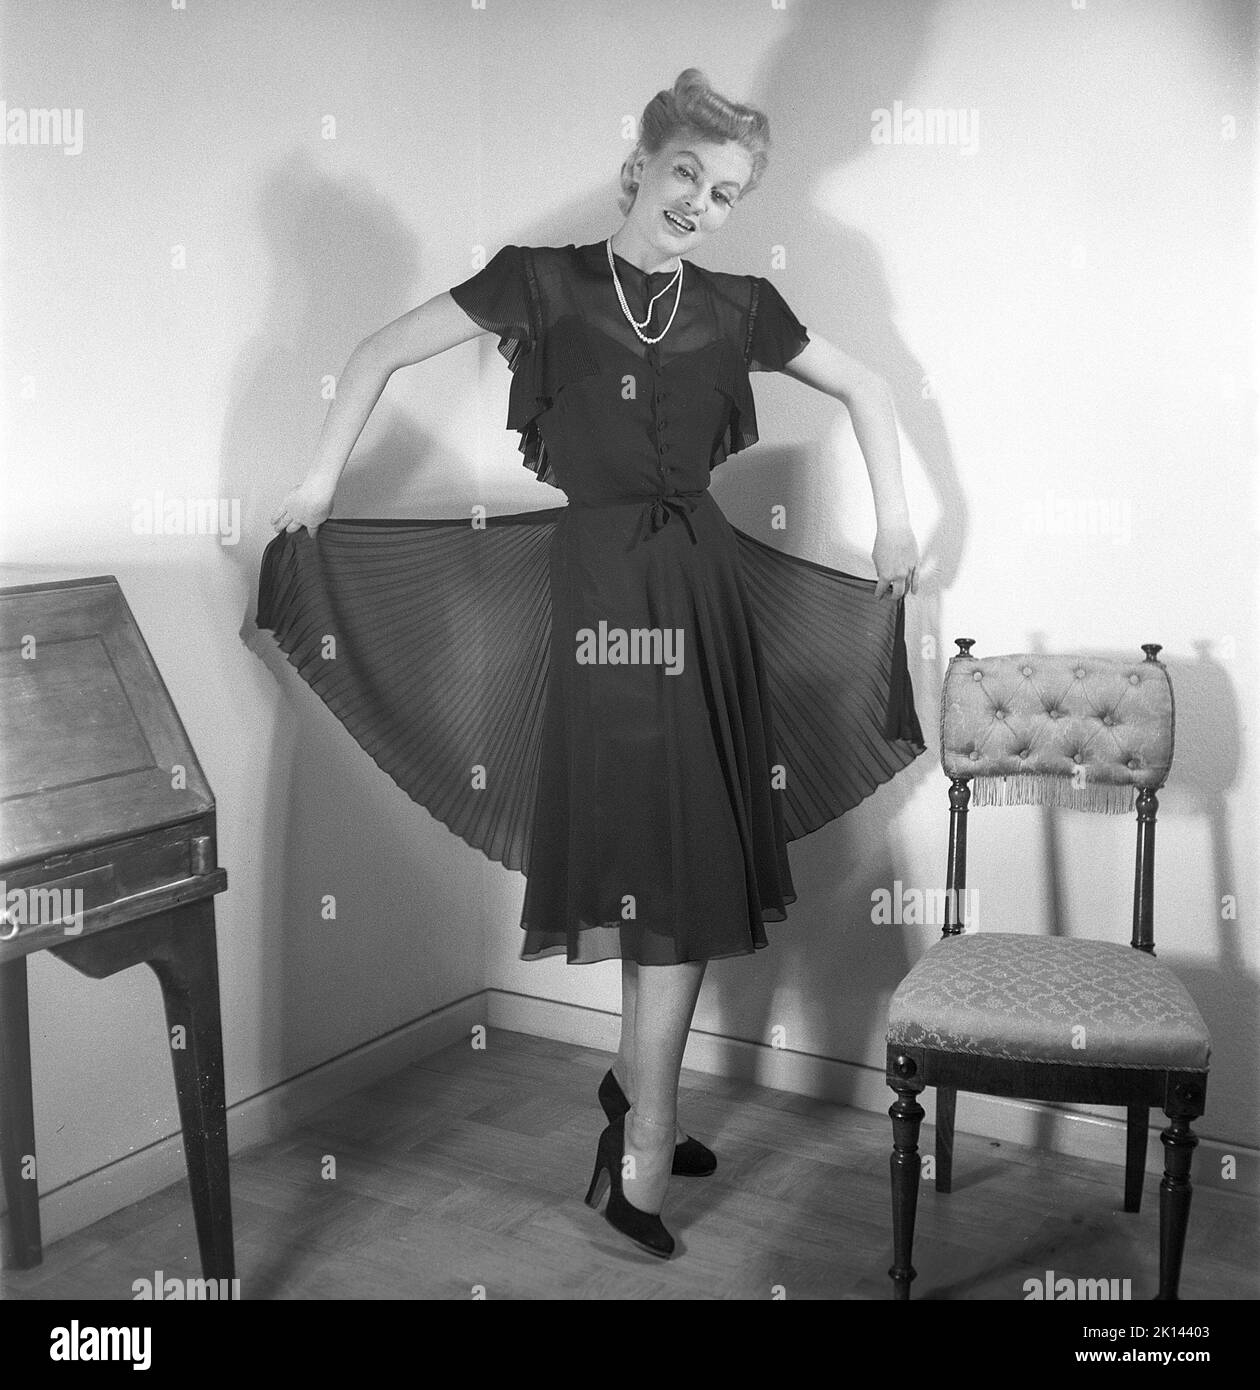 Damenmode im Jahr 1940s. Eine junge Frau, die für ein Damenmagazin fotografiert wurde, um die Damenmode von 1945 zu zeigen. Das weibliche Model trägt ein schwarzes Abendkleid in verschiedenen Stoffschichten. Schweden 1945. Kristoffersson Ref. R2-4 Stockfoto